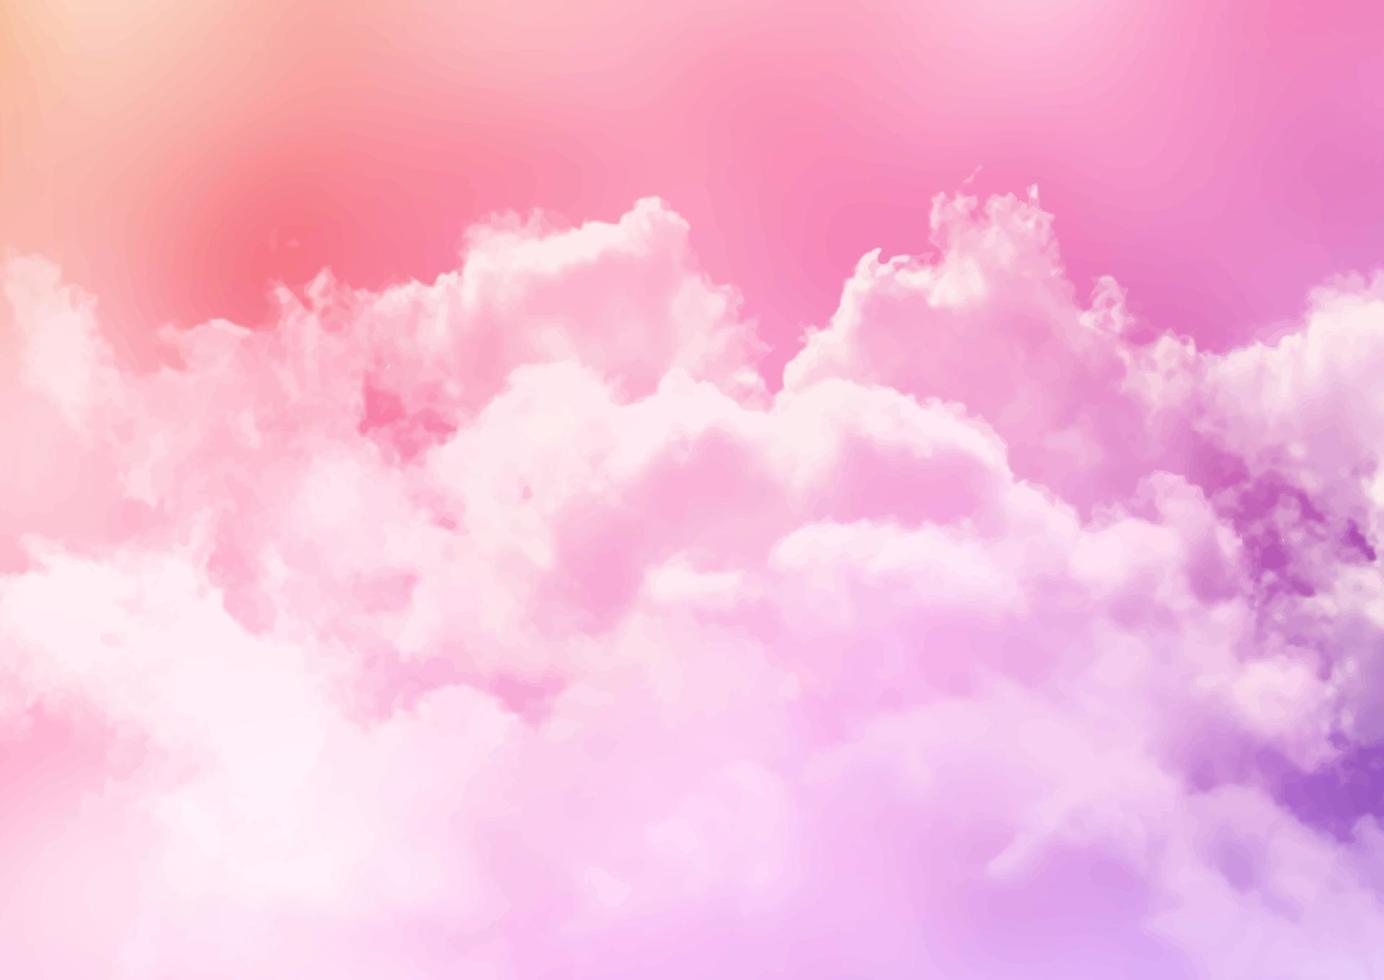 suiker suikerspin wolken achtergrond vector